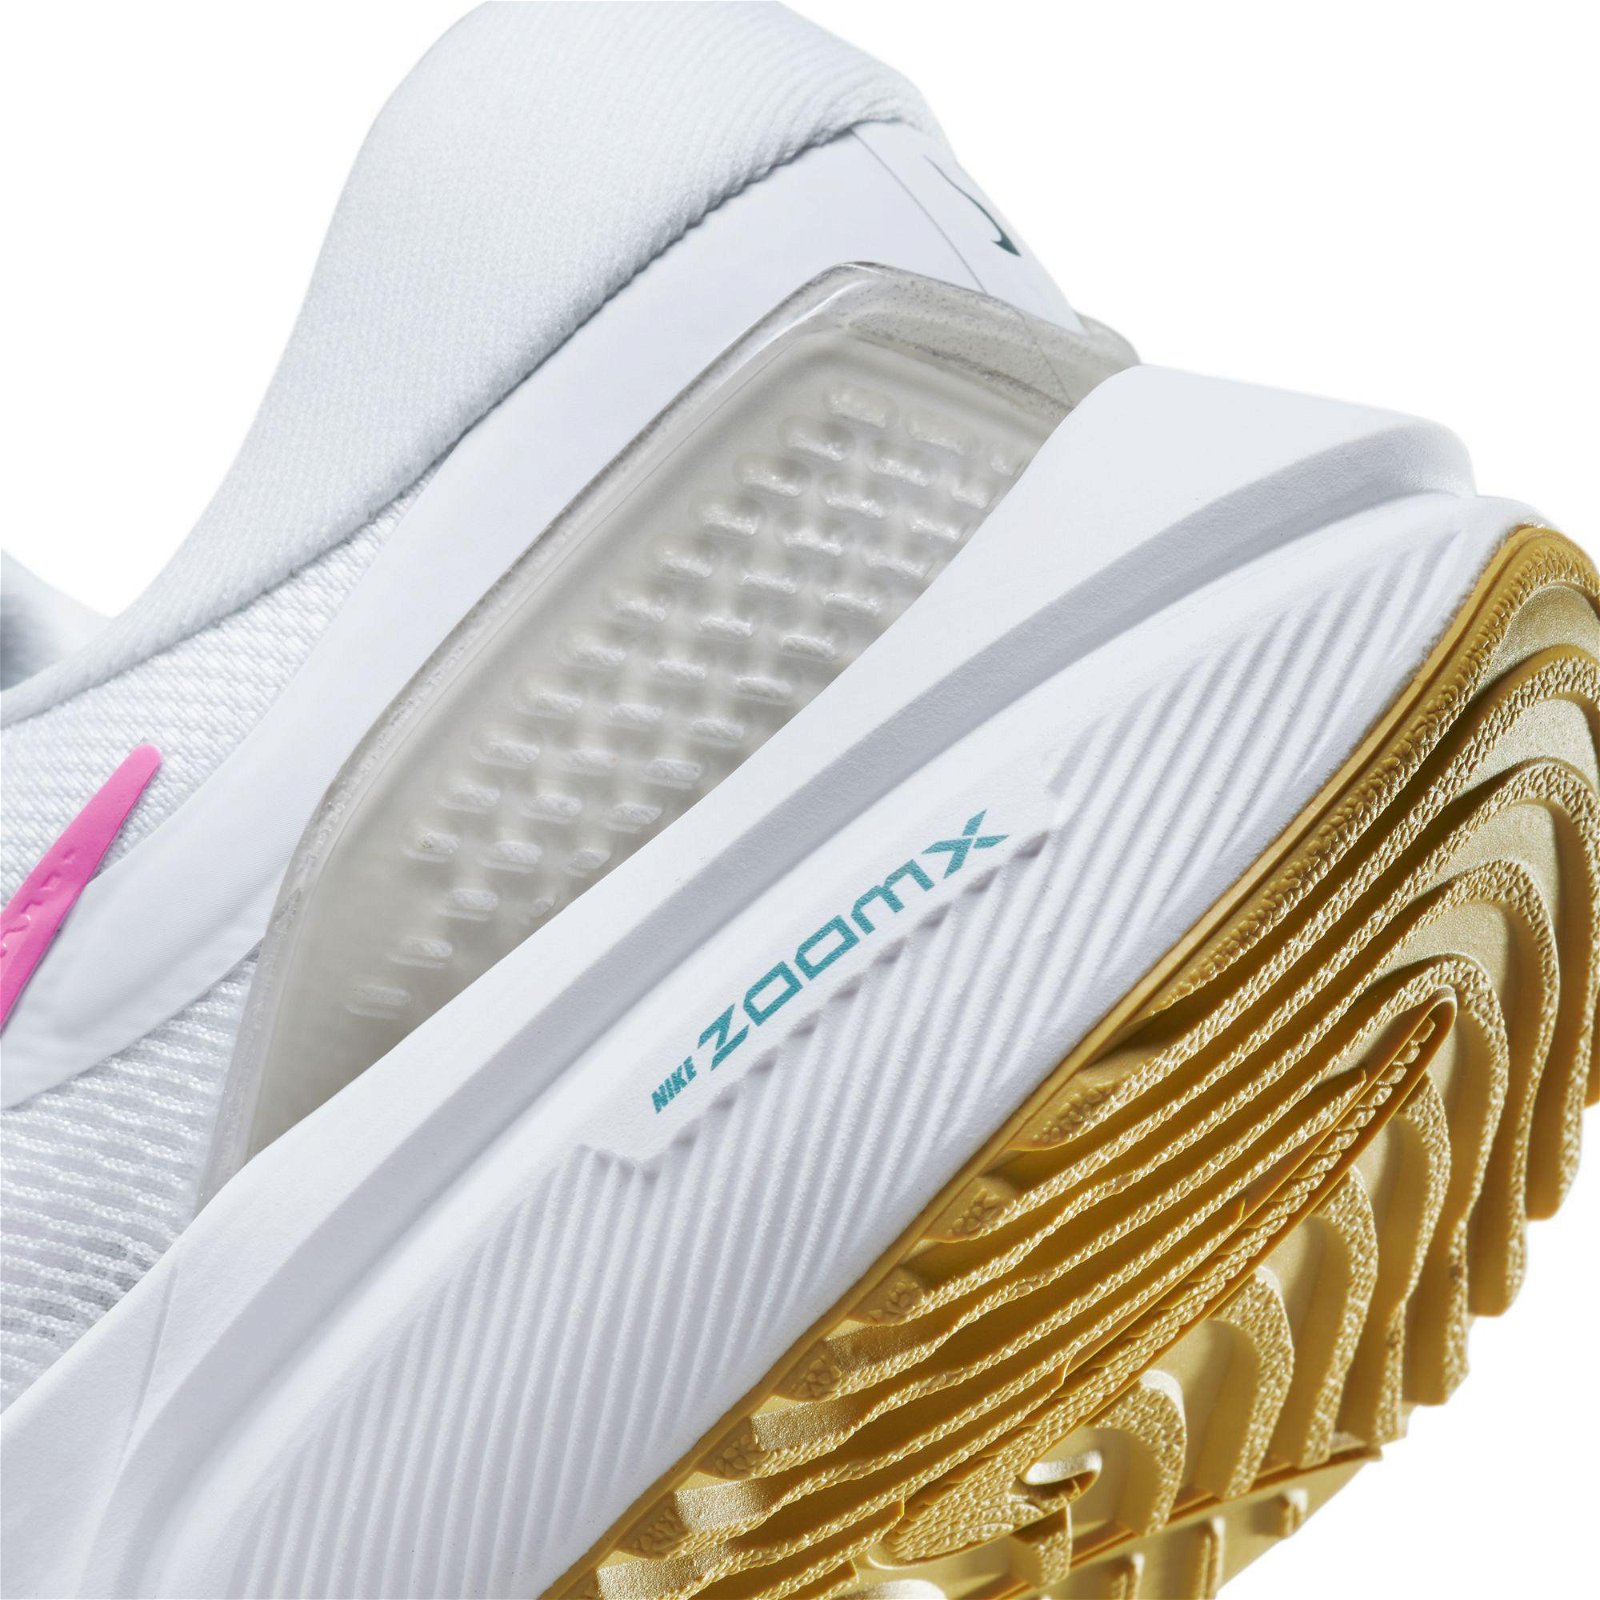 Nike Air Zoom Vomero 16 Kadın Beyaz Spor Ayakkabı